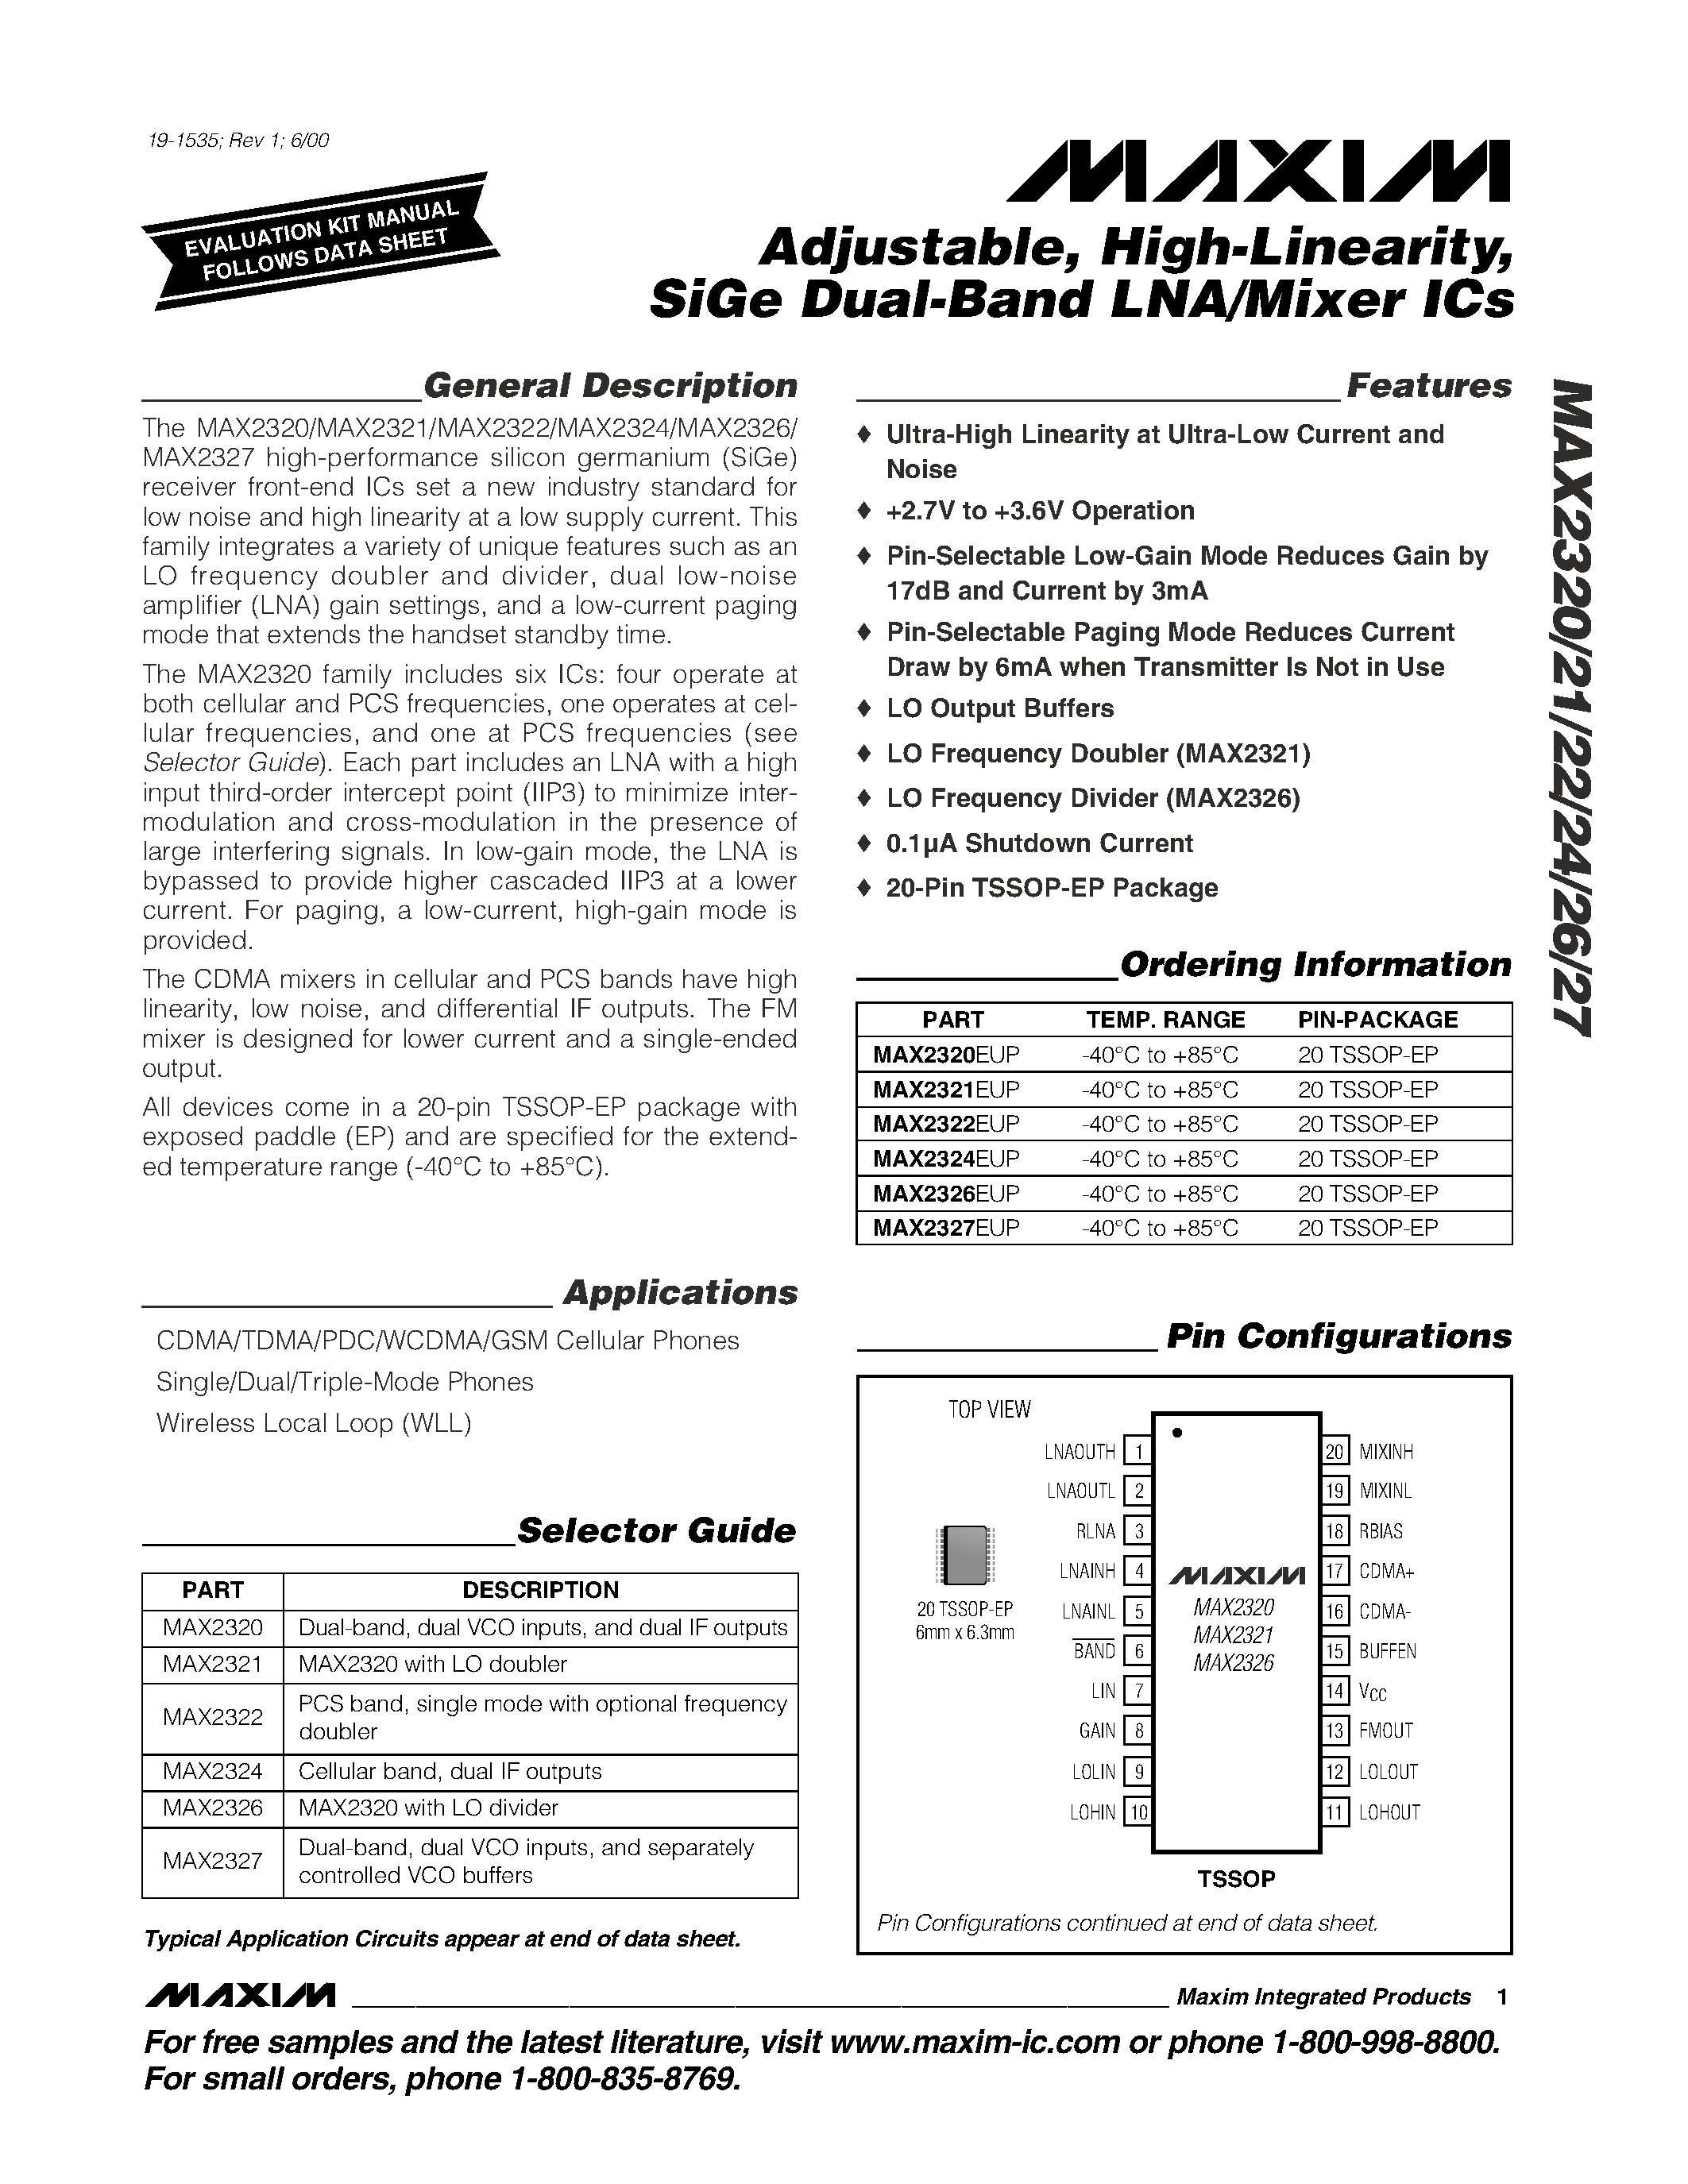 Даташит MAX2322EUP - Adjustable / High-Linearity / SiGe Dual-Band LNA/Mixer ICs страница 1